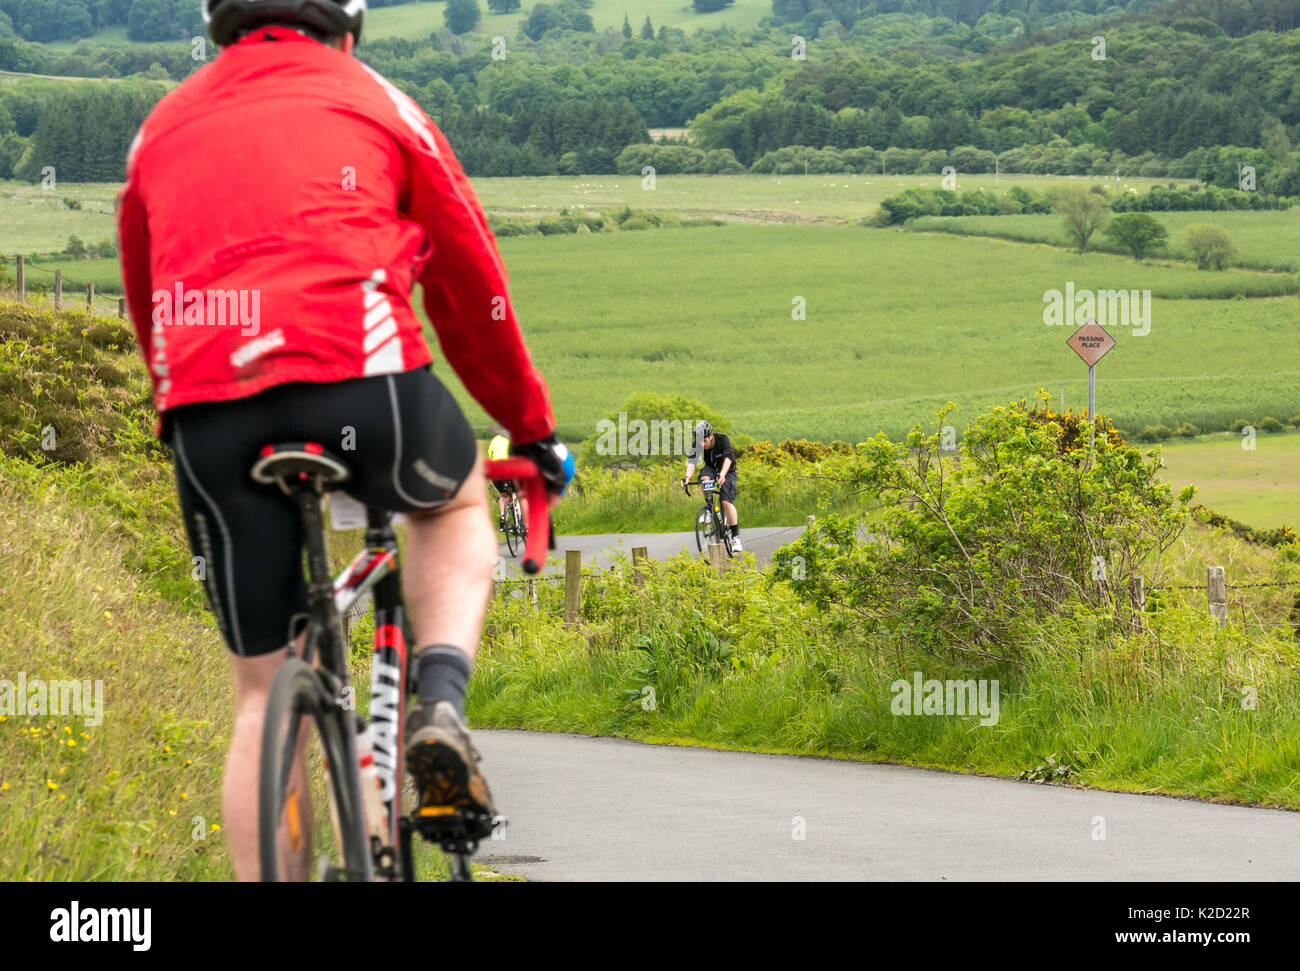 Radfahrer Radfahren nach oben und unten Dreva Hill, Zyklus recht Schottland Skinny Tweed 2017 Radfahren Veranstaltung, Peebles, Scottish Borders, Schottland, Großbritannien Stockfoto